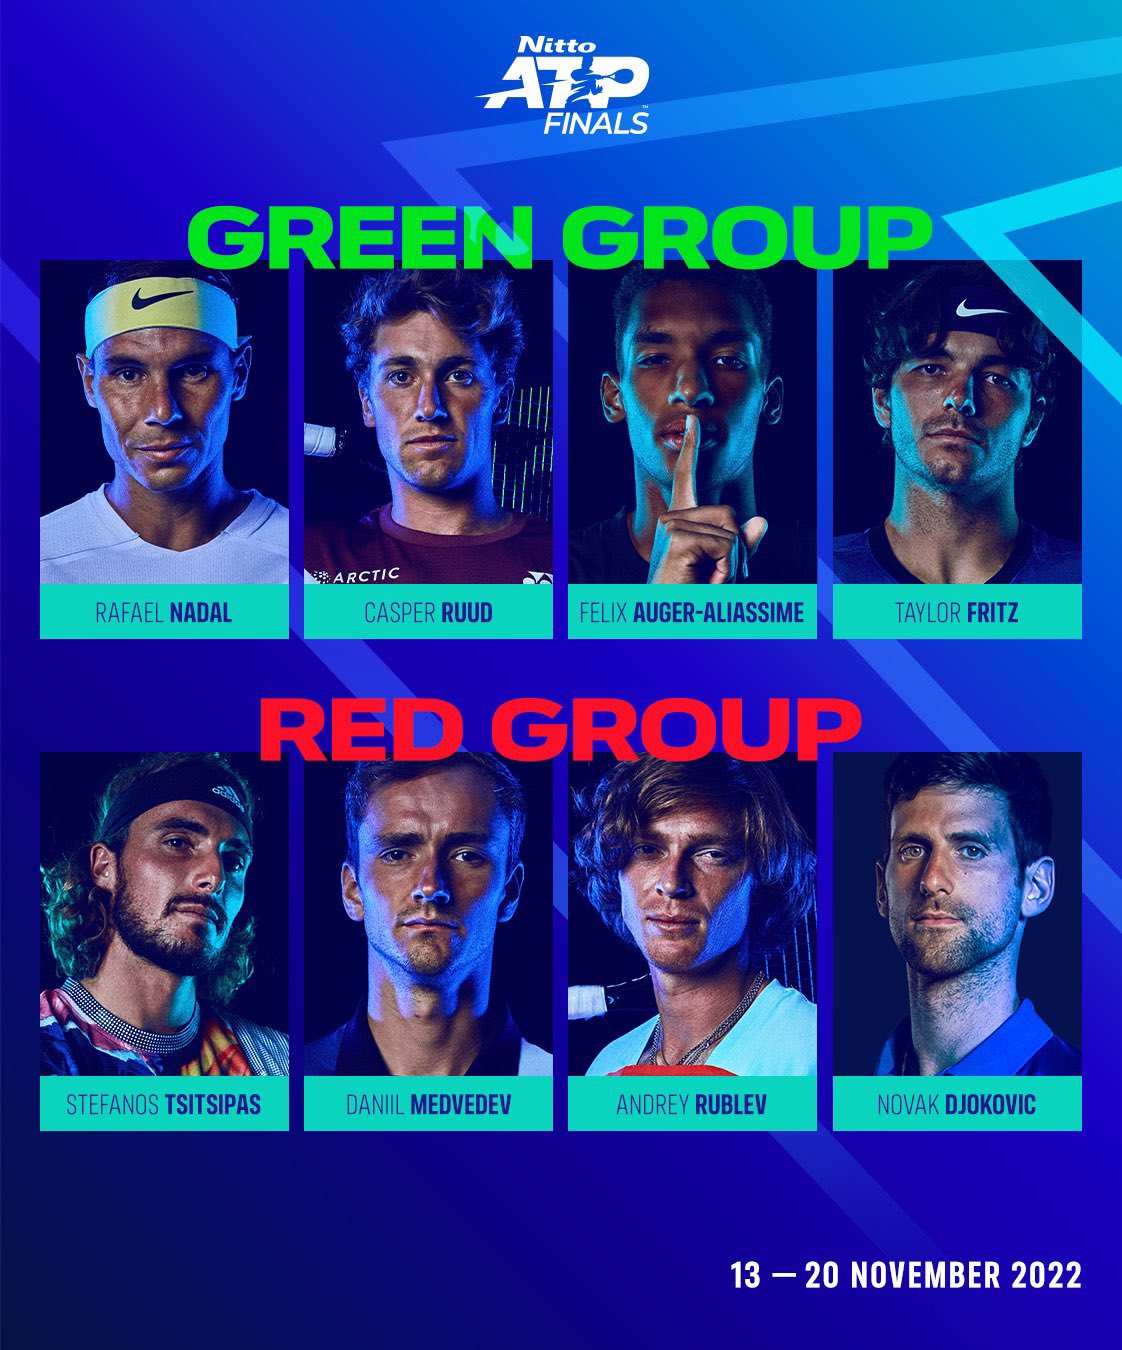 ATP Finals de Tênis: grupos, programação e onde assistir